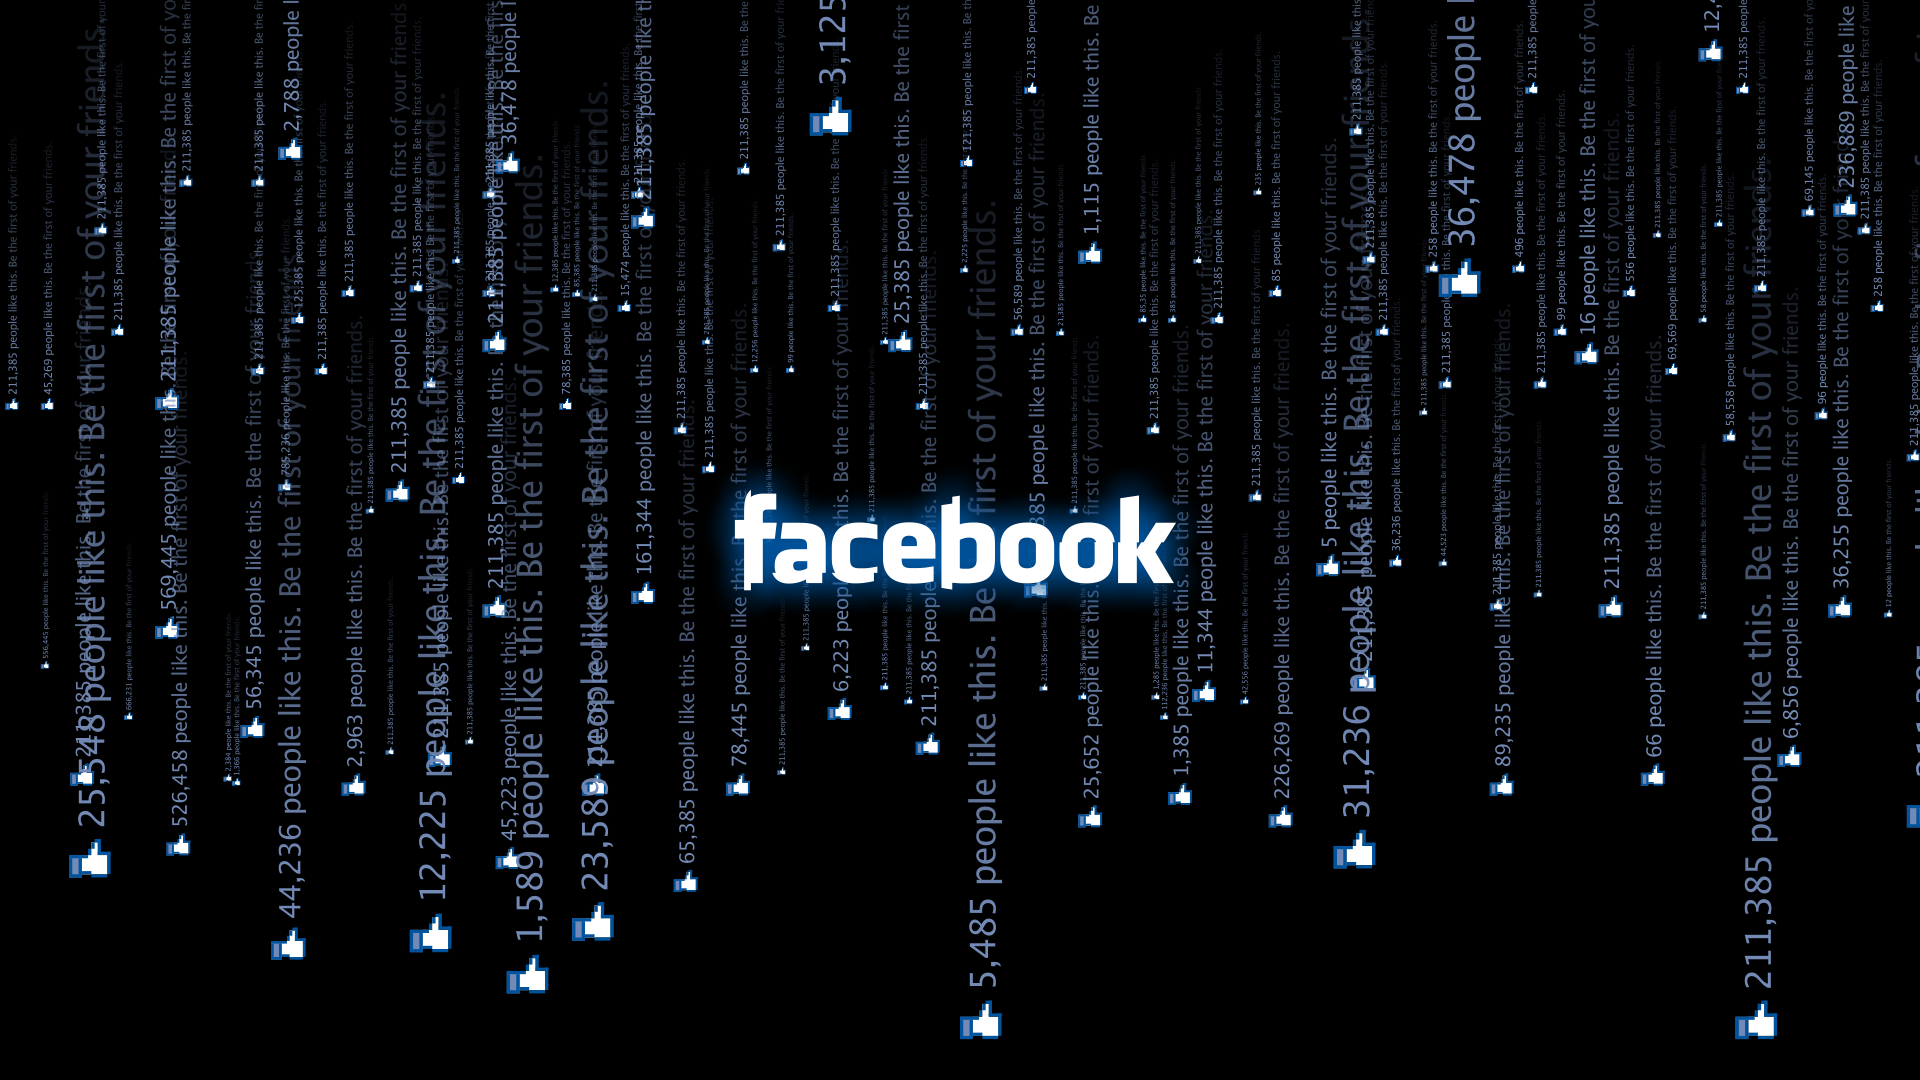 #technology, #Facebook, #black, wallpaper. Mocah HD Wallpaper